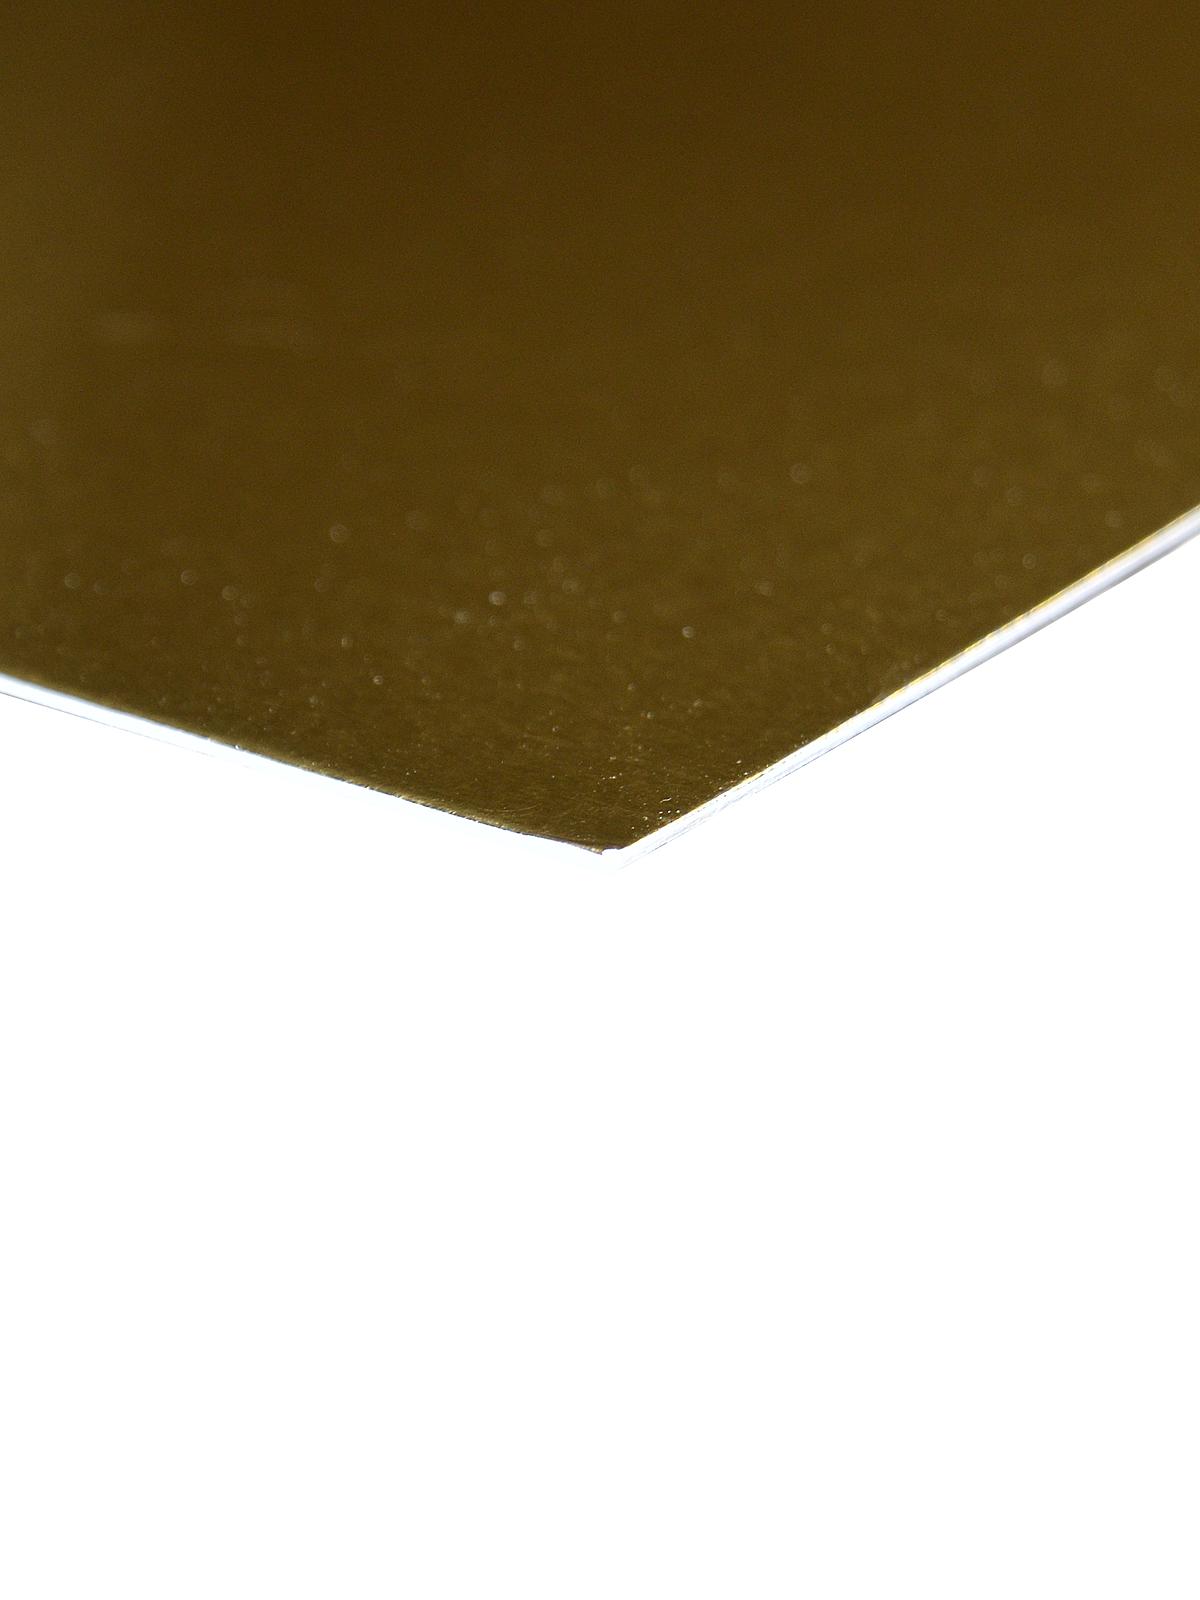 Berkshire Mat Board Gold Foil 32 In. X 40 In. Cream Core